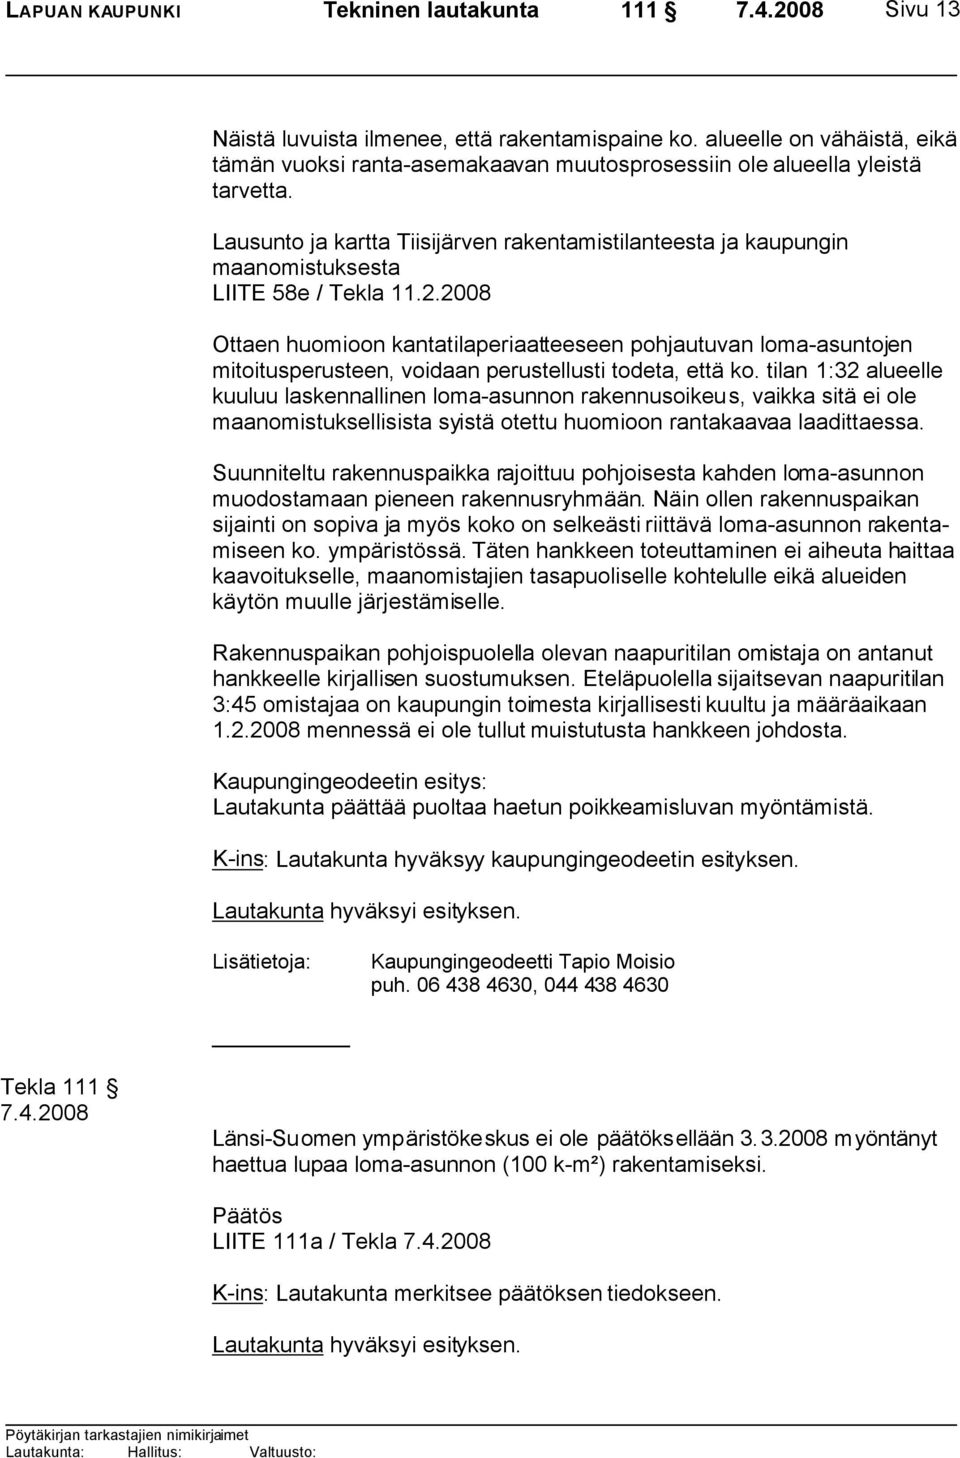 Lausunto ja kartta Tiisijärven rakentamistilanteesta ja kaupungin maanomistuksesta LIITE 58e / Tekla 11.2.